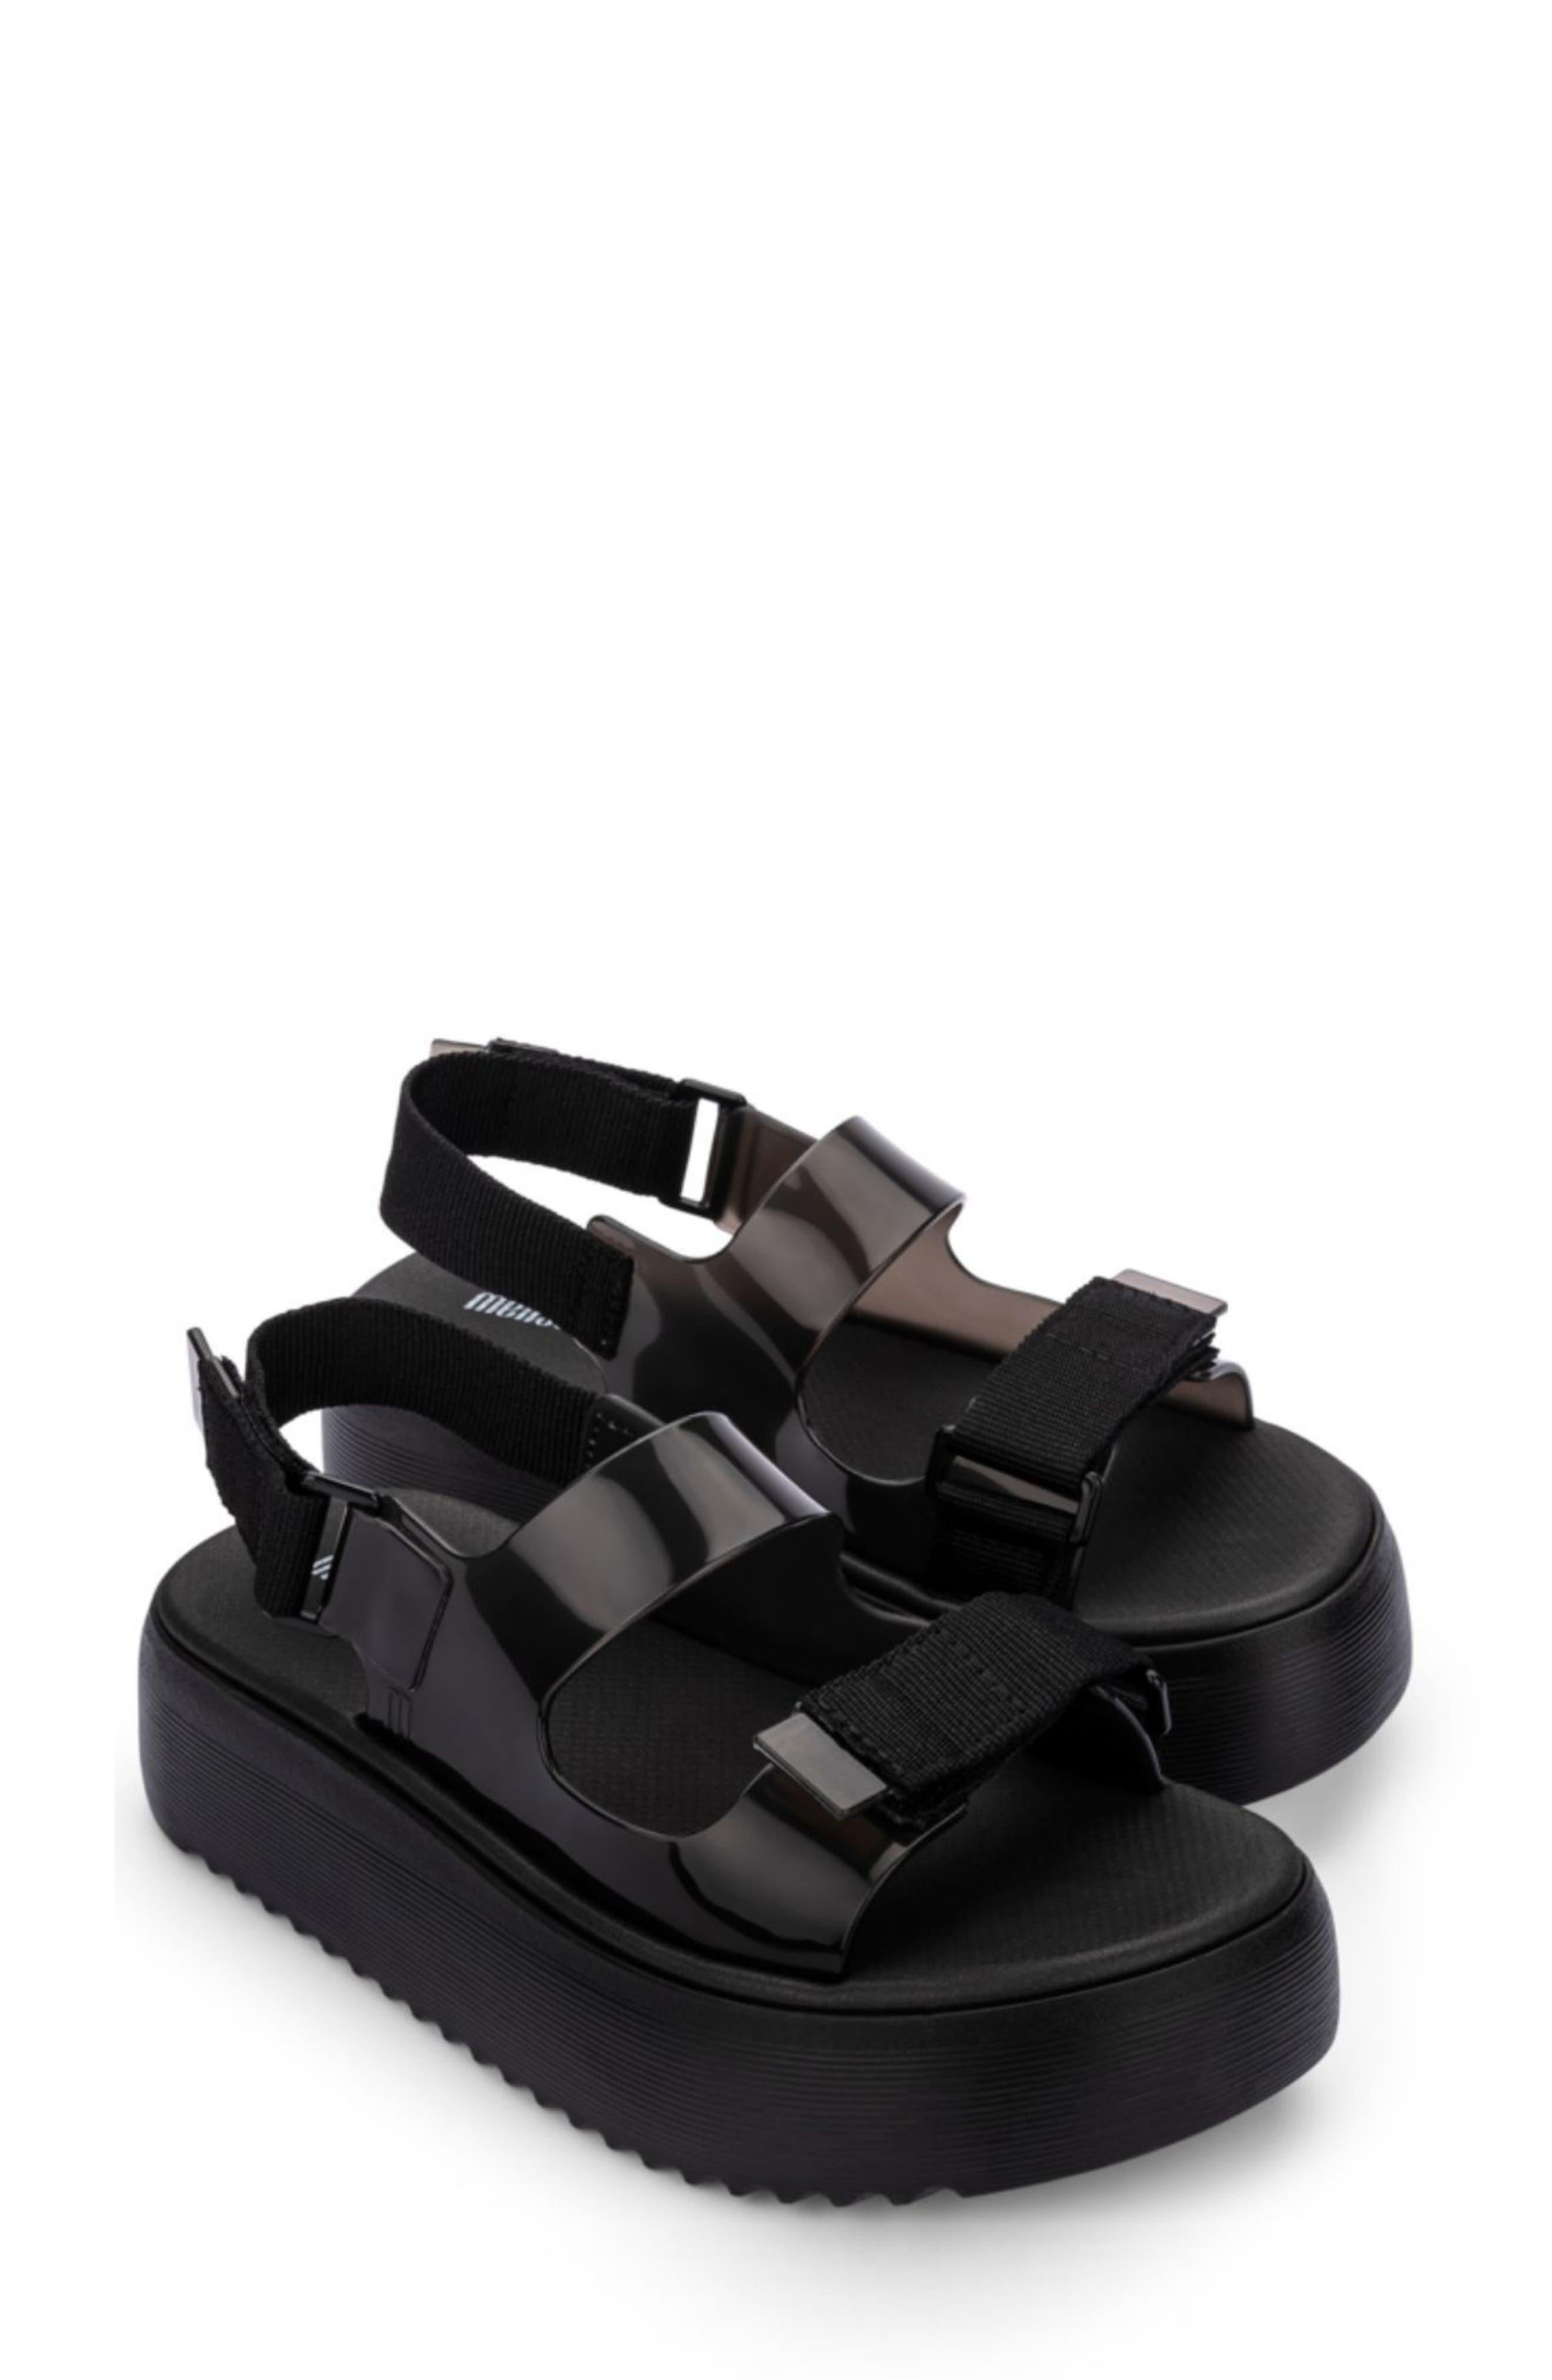 Melissa Brave Papete Platform Sandal in Black | Lyst